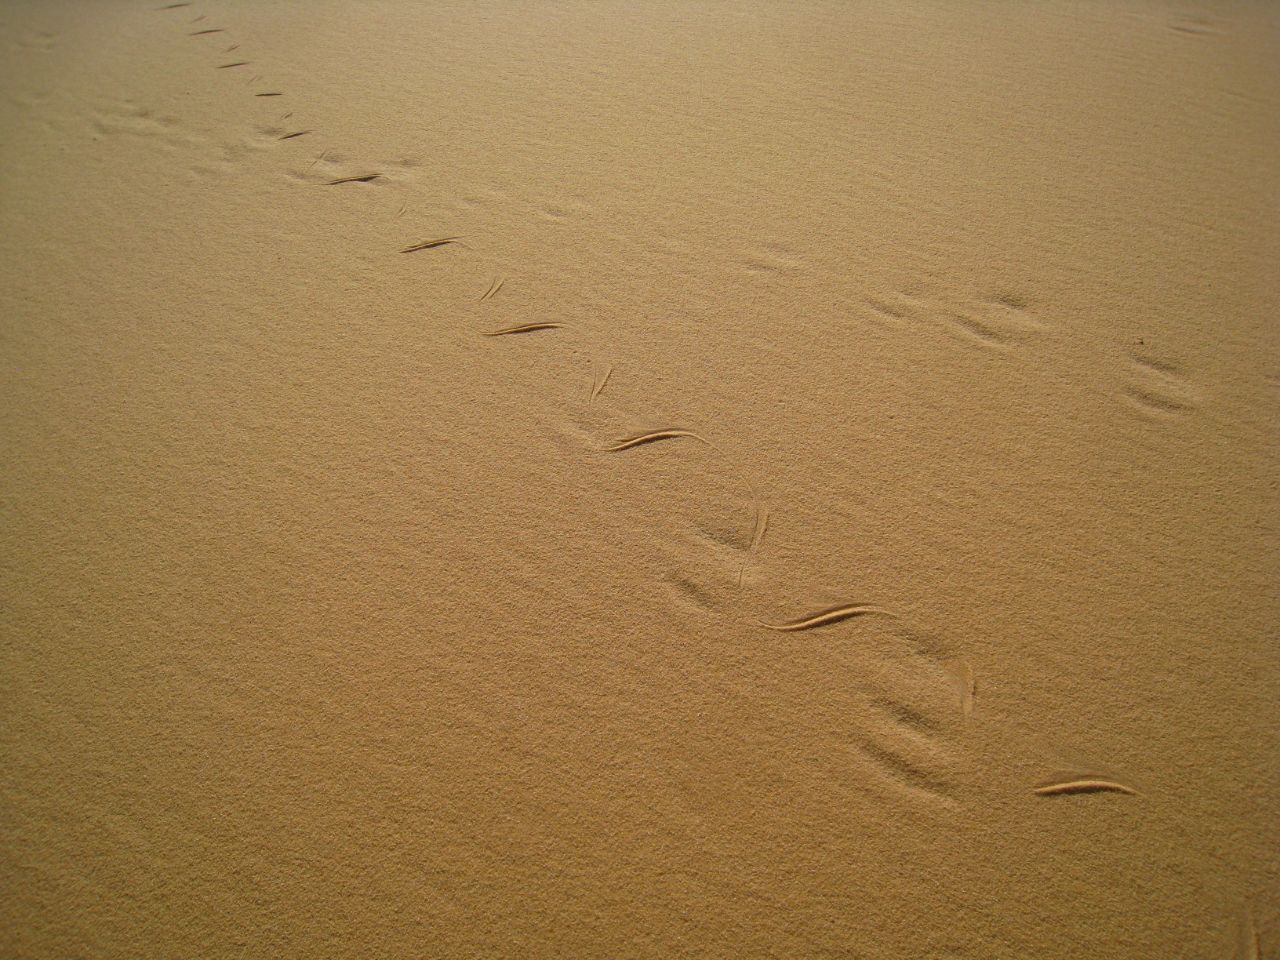 Музыка песчаных дюн или Алжирская Сахара осенью 2017 года. Тассилин-Адджер Национальный Парк, Алжир